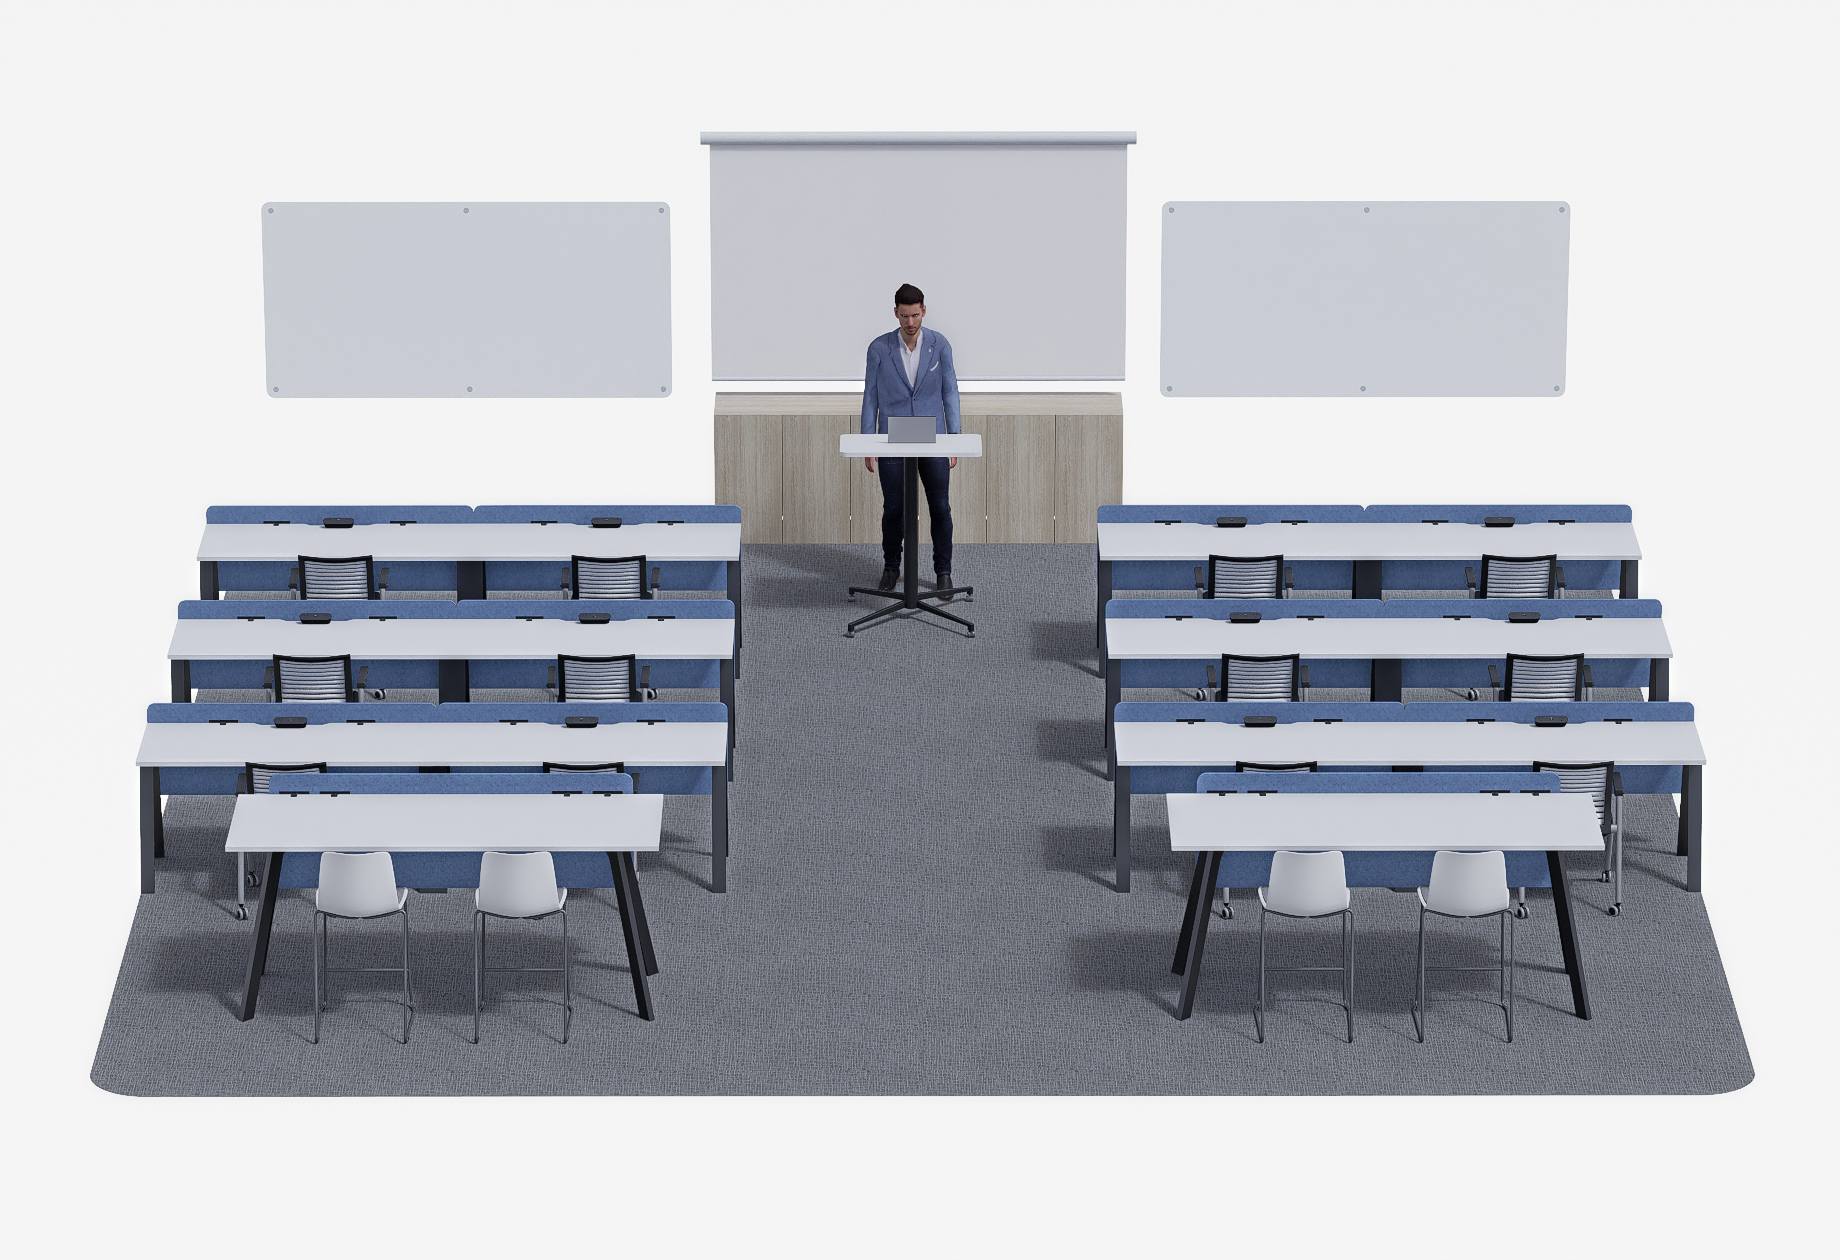 Seminar Lecture Room Concept #2 (3)